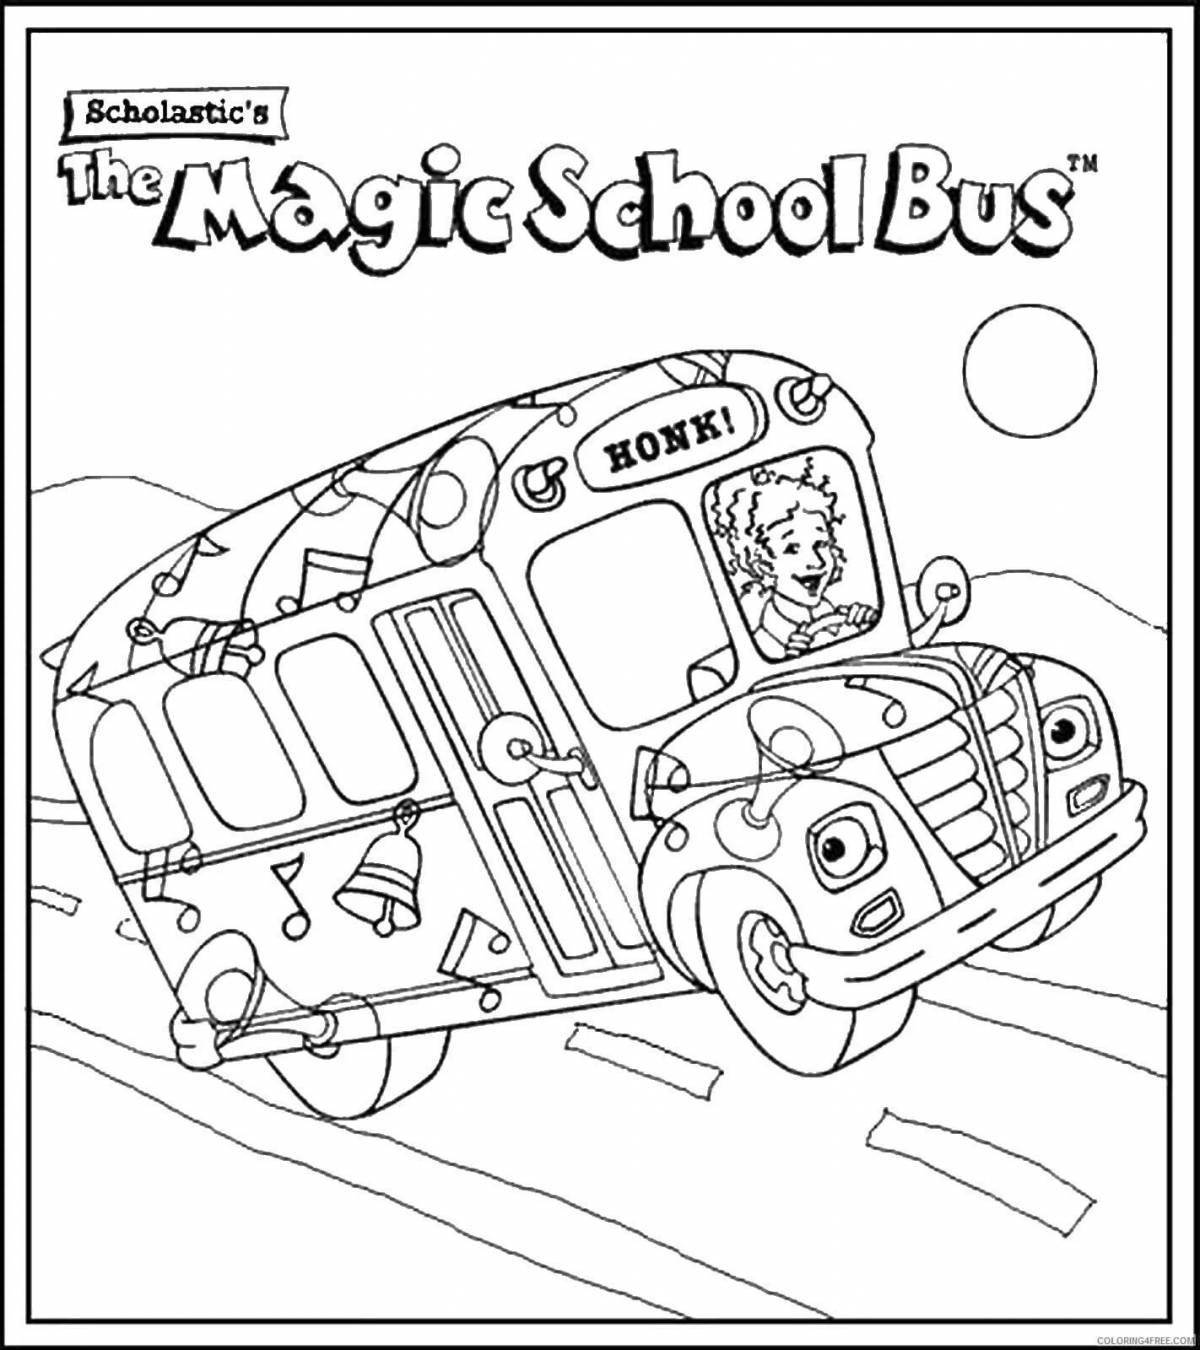 Раскраска веселый школьный автобус гордона